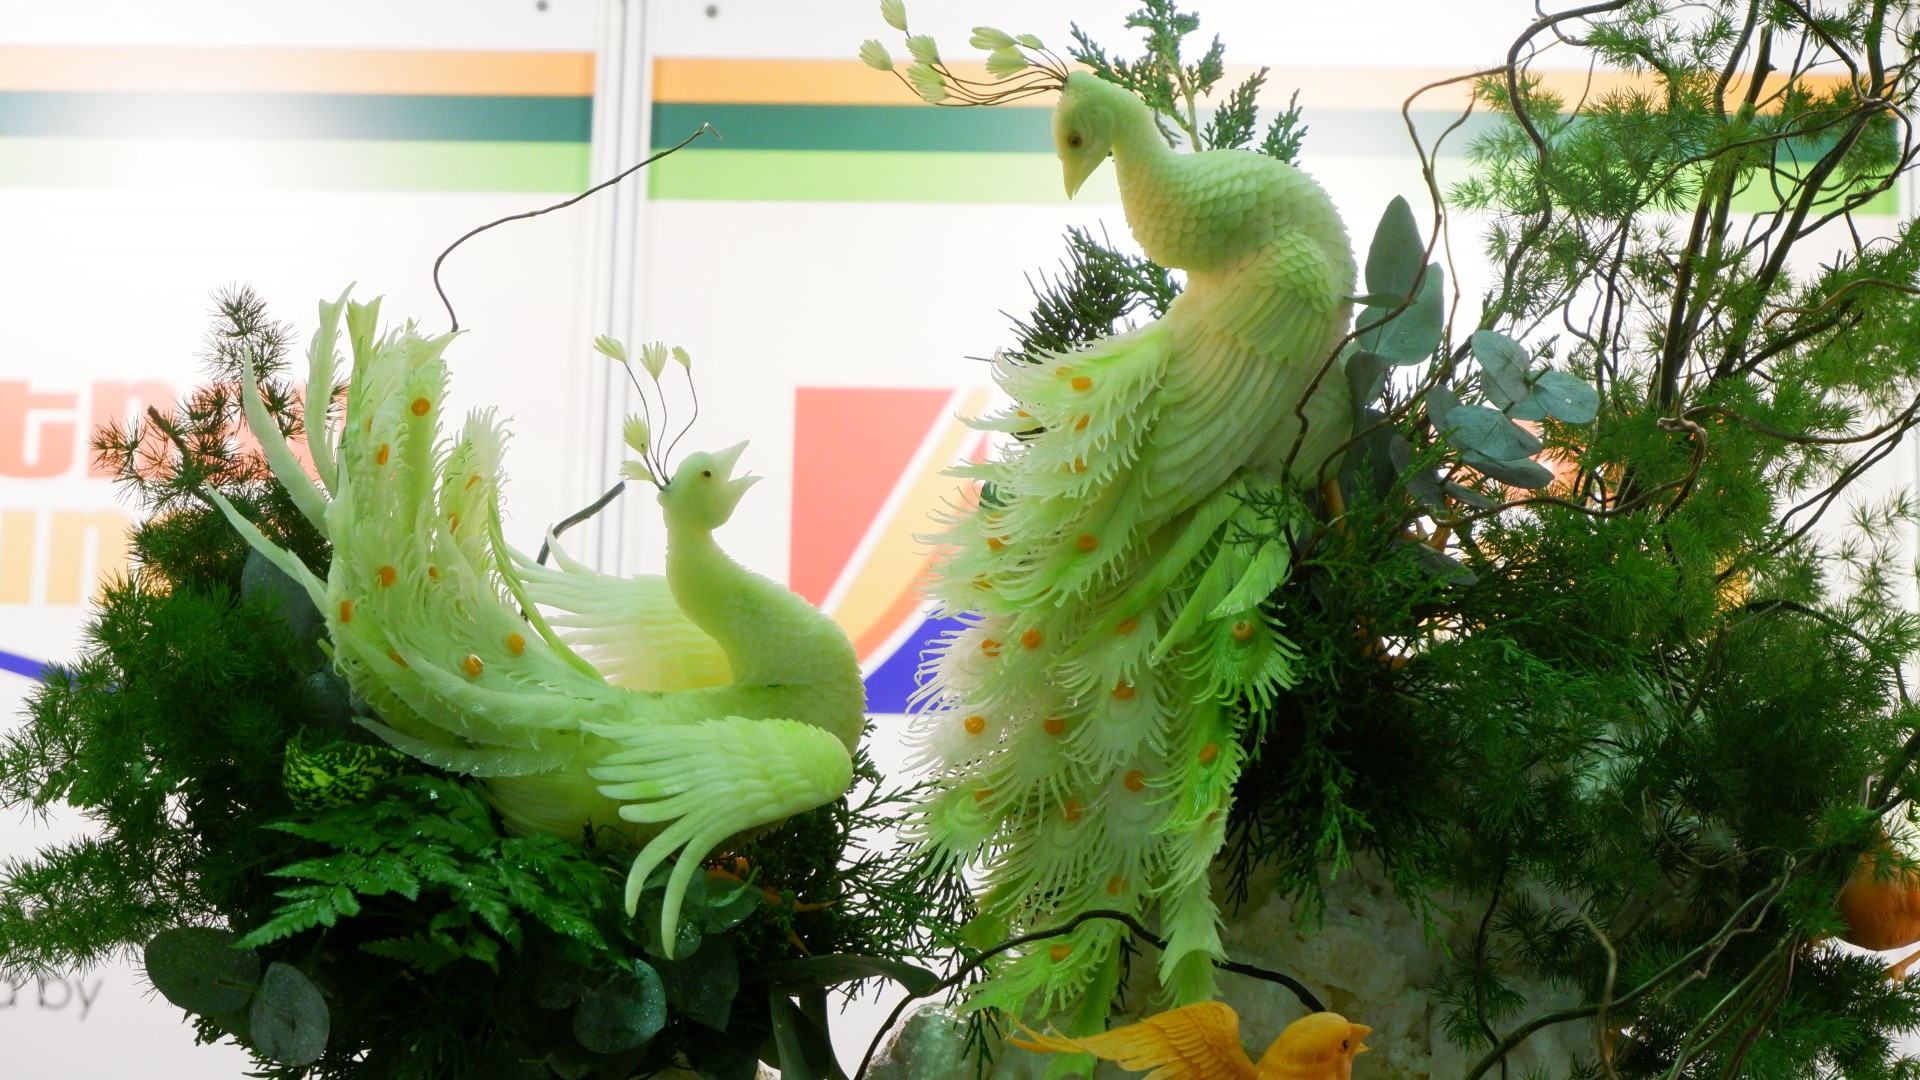 Chim bay, phượng múa được “biến hóa” sống động từ trái cây